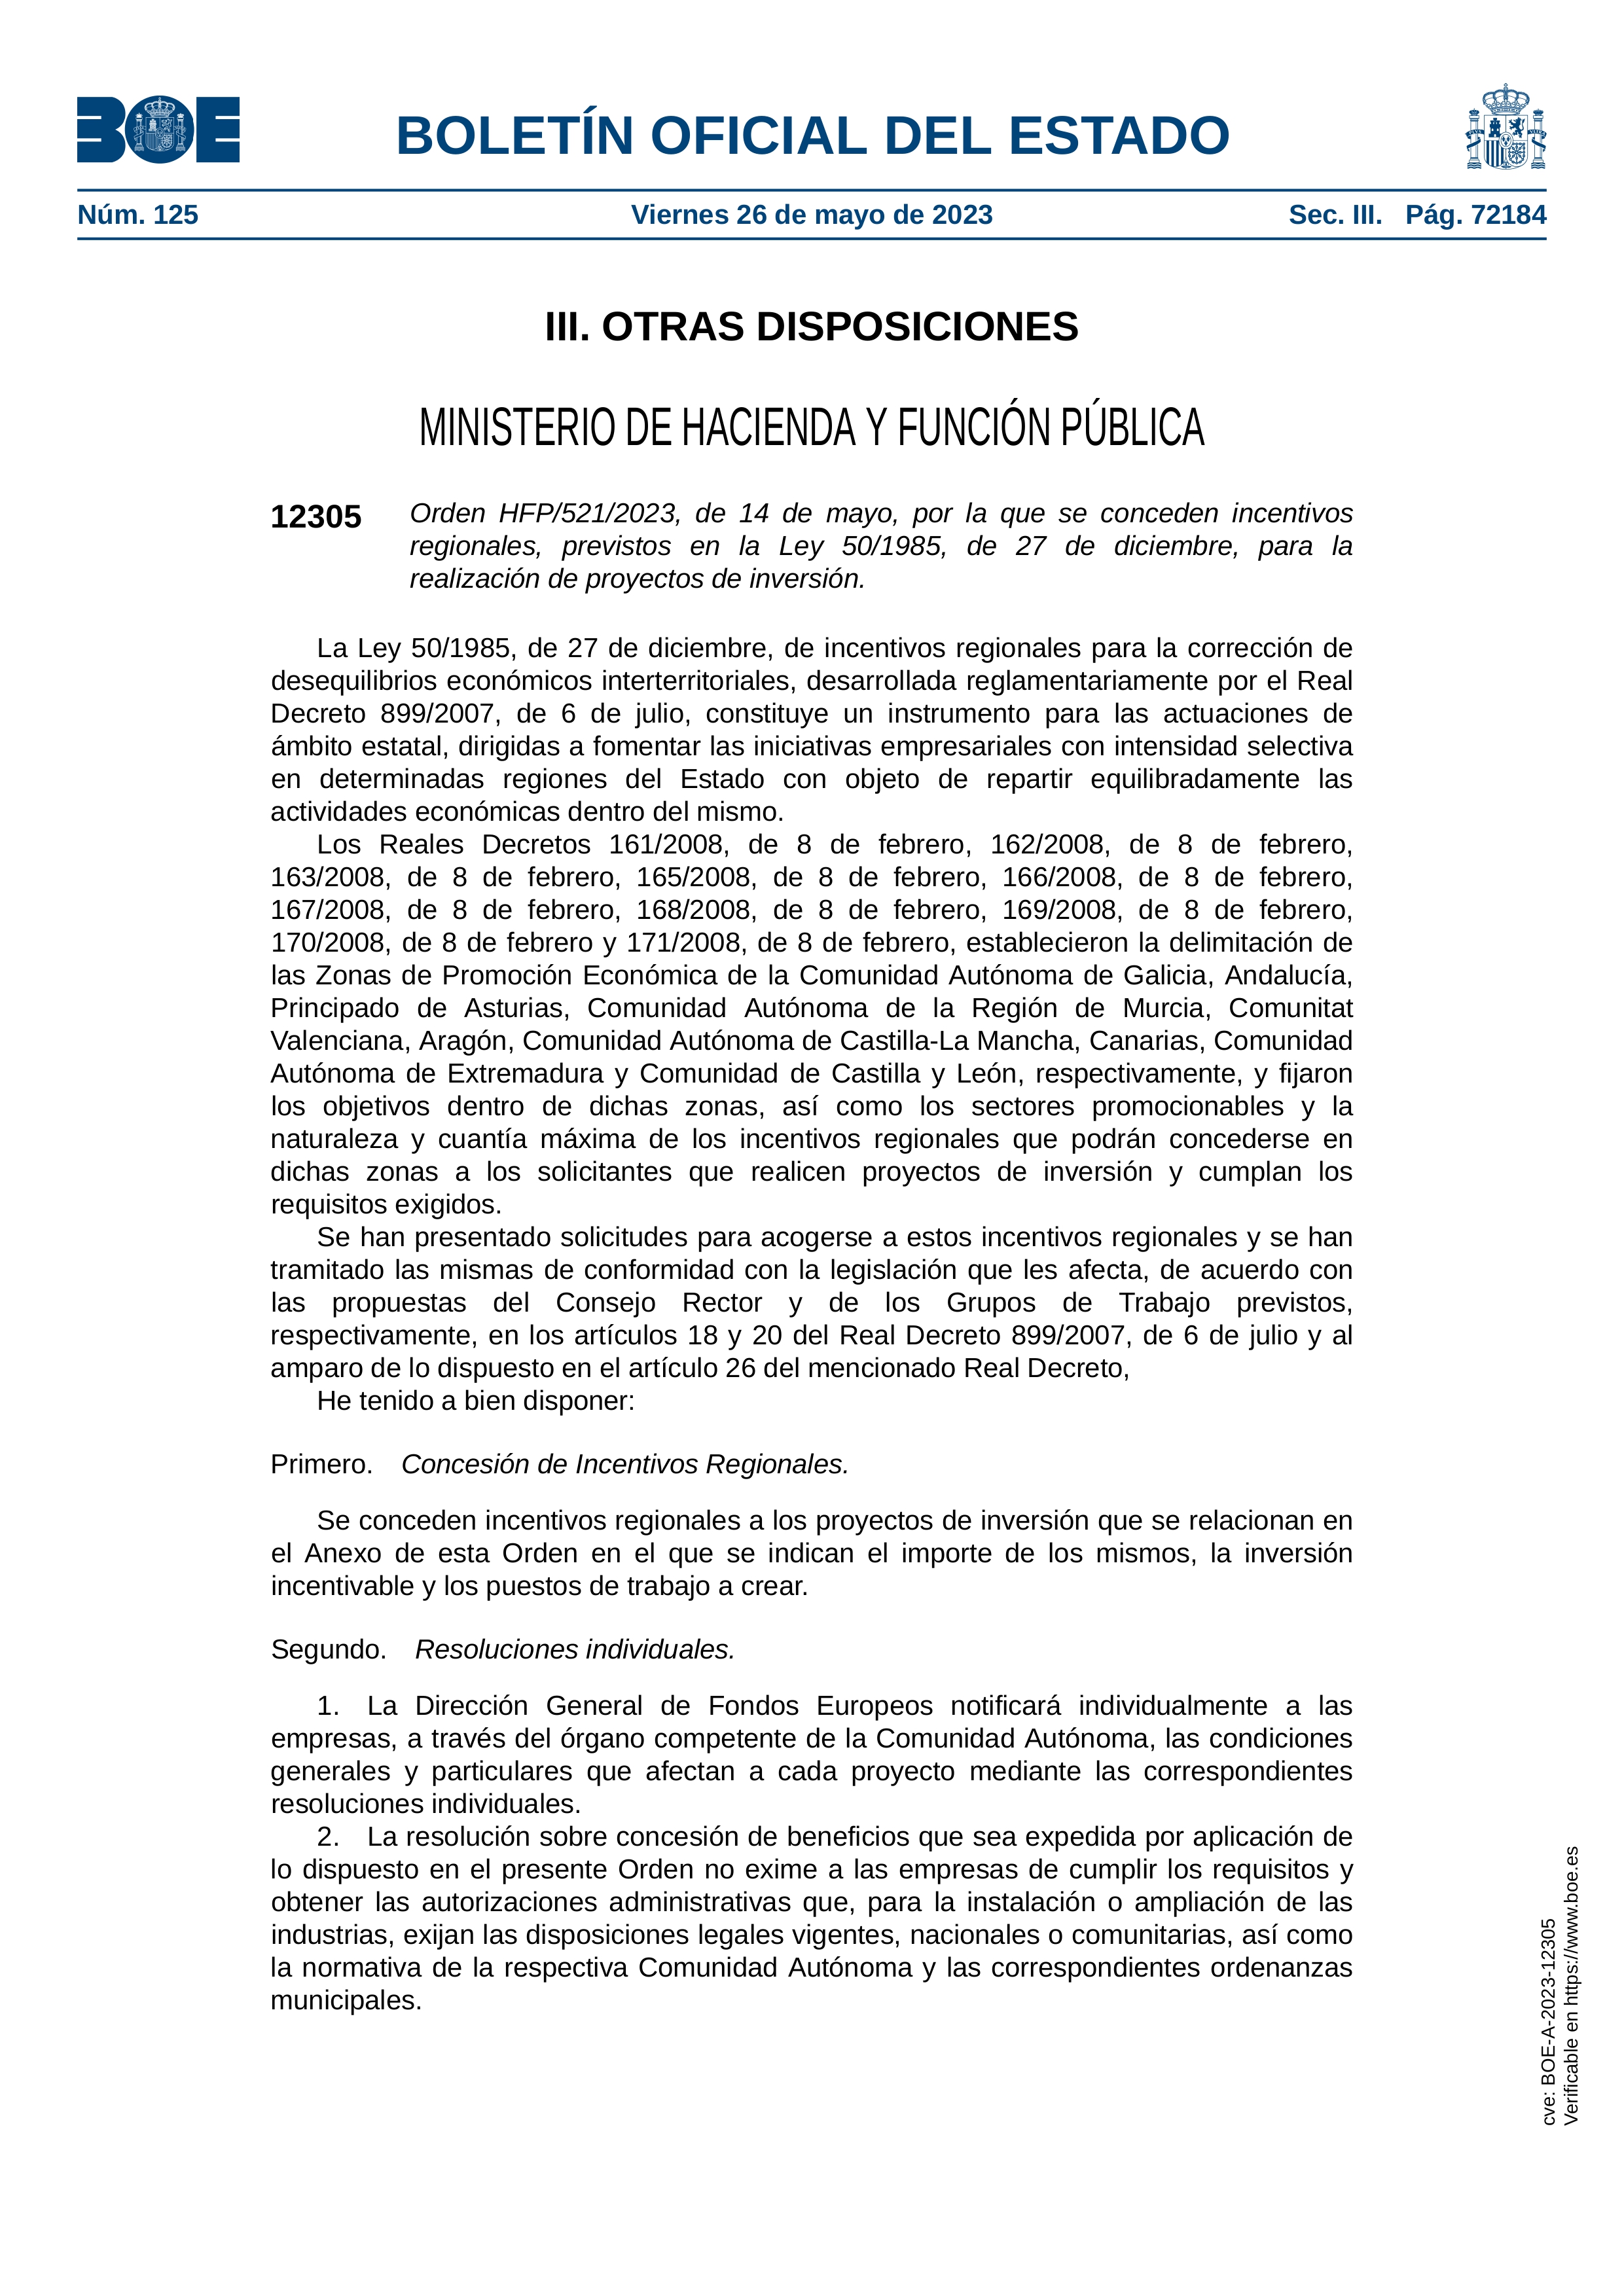 El Gobierno aprueba la concesión de incentivos regionales para dos proyectos de inversión en la Región de Murcia por más de 983.000 euros